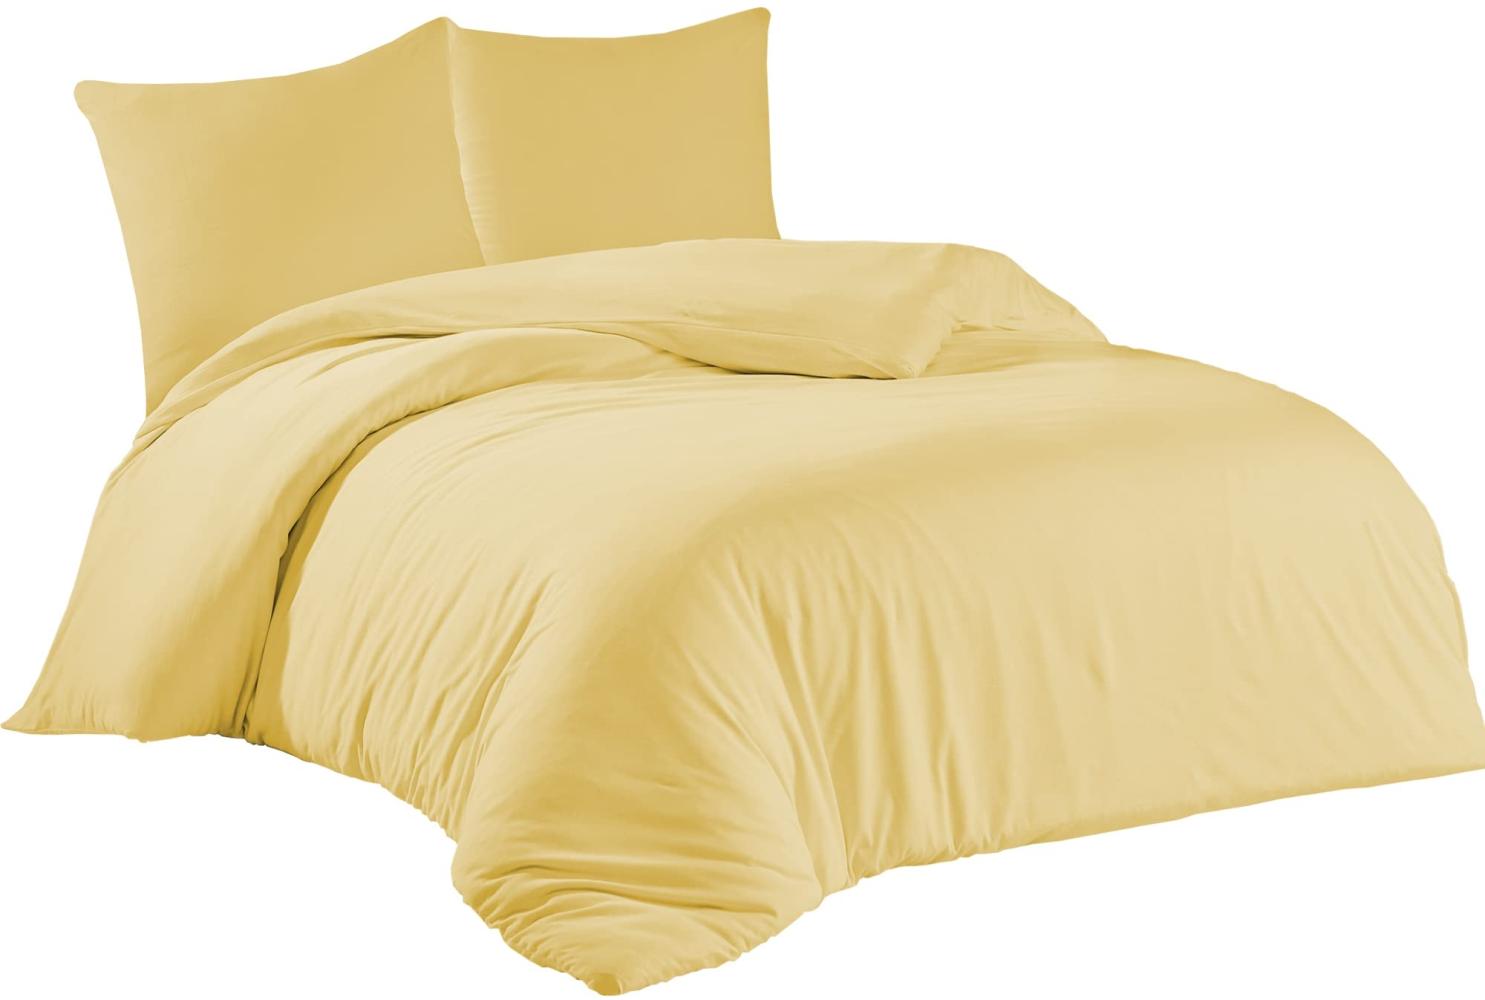 livessa Bettwäsche 200x220 3teilig Baumwolle - Bettwäsche mit Reißverschluss: Bettbezug 200x220 cm + 2er Set Kissenbezug 80x80 cm, Oeko-Tex Zertifiziert, aus%100 Baumwolle Jersey (140 g/qm), Gelb Bild 1